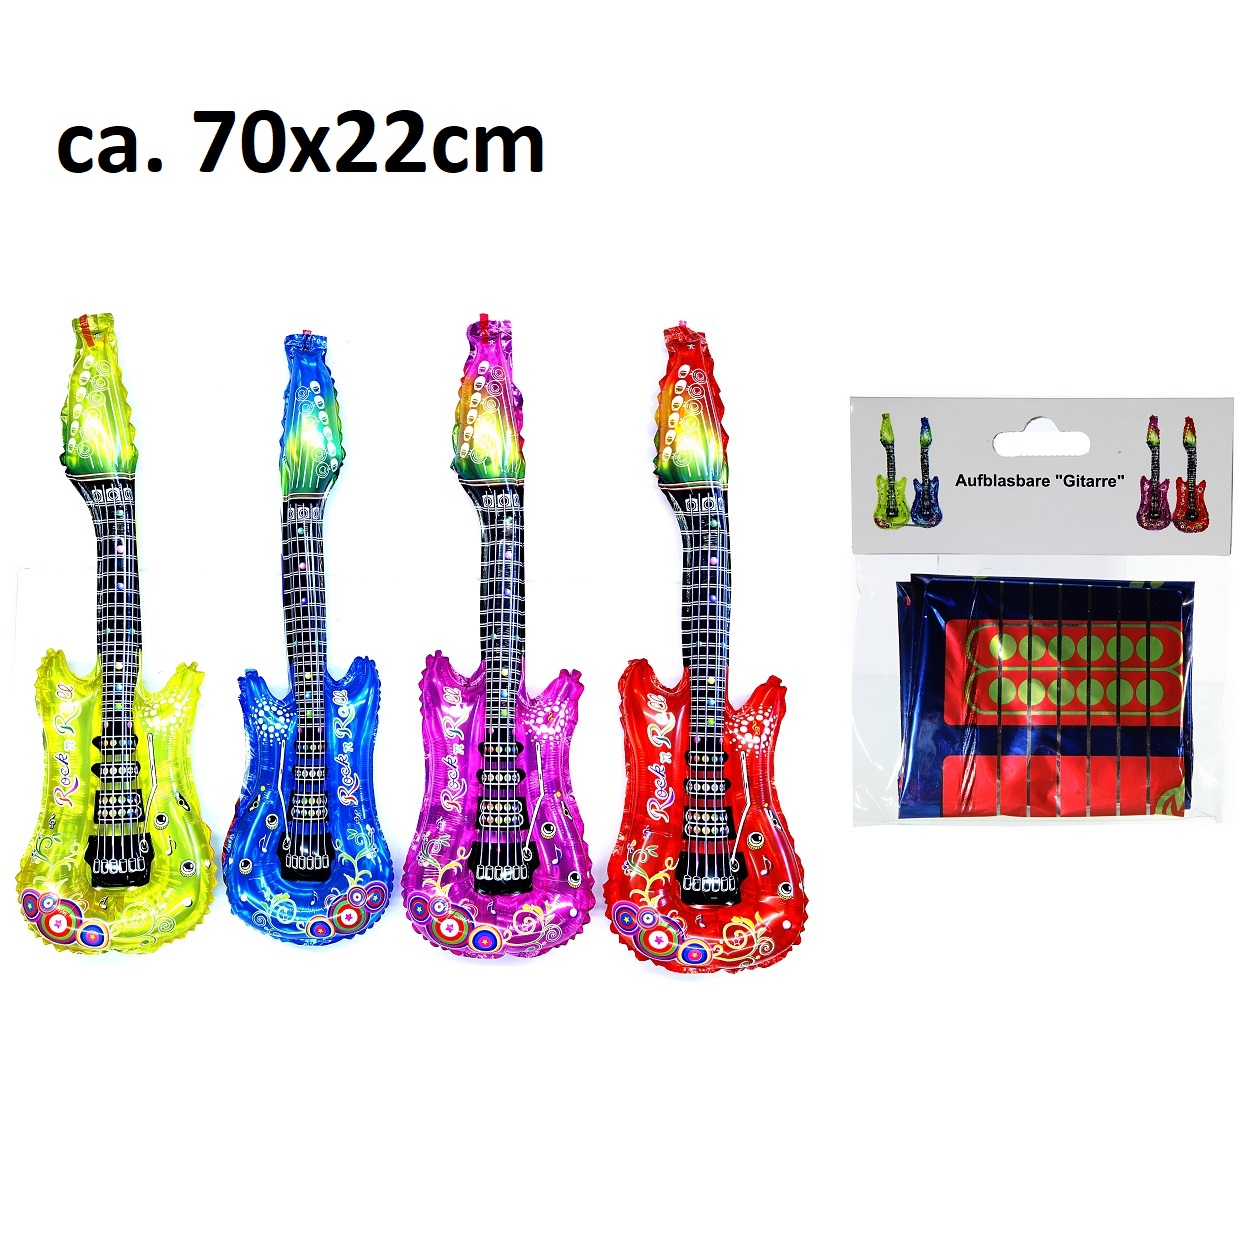 Aufblasbare Gitarre mit Glocke ca. 70cm farblich sortiert